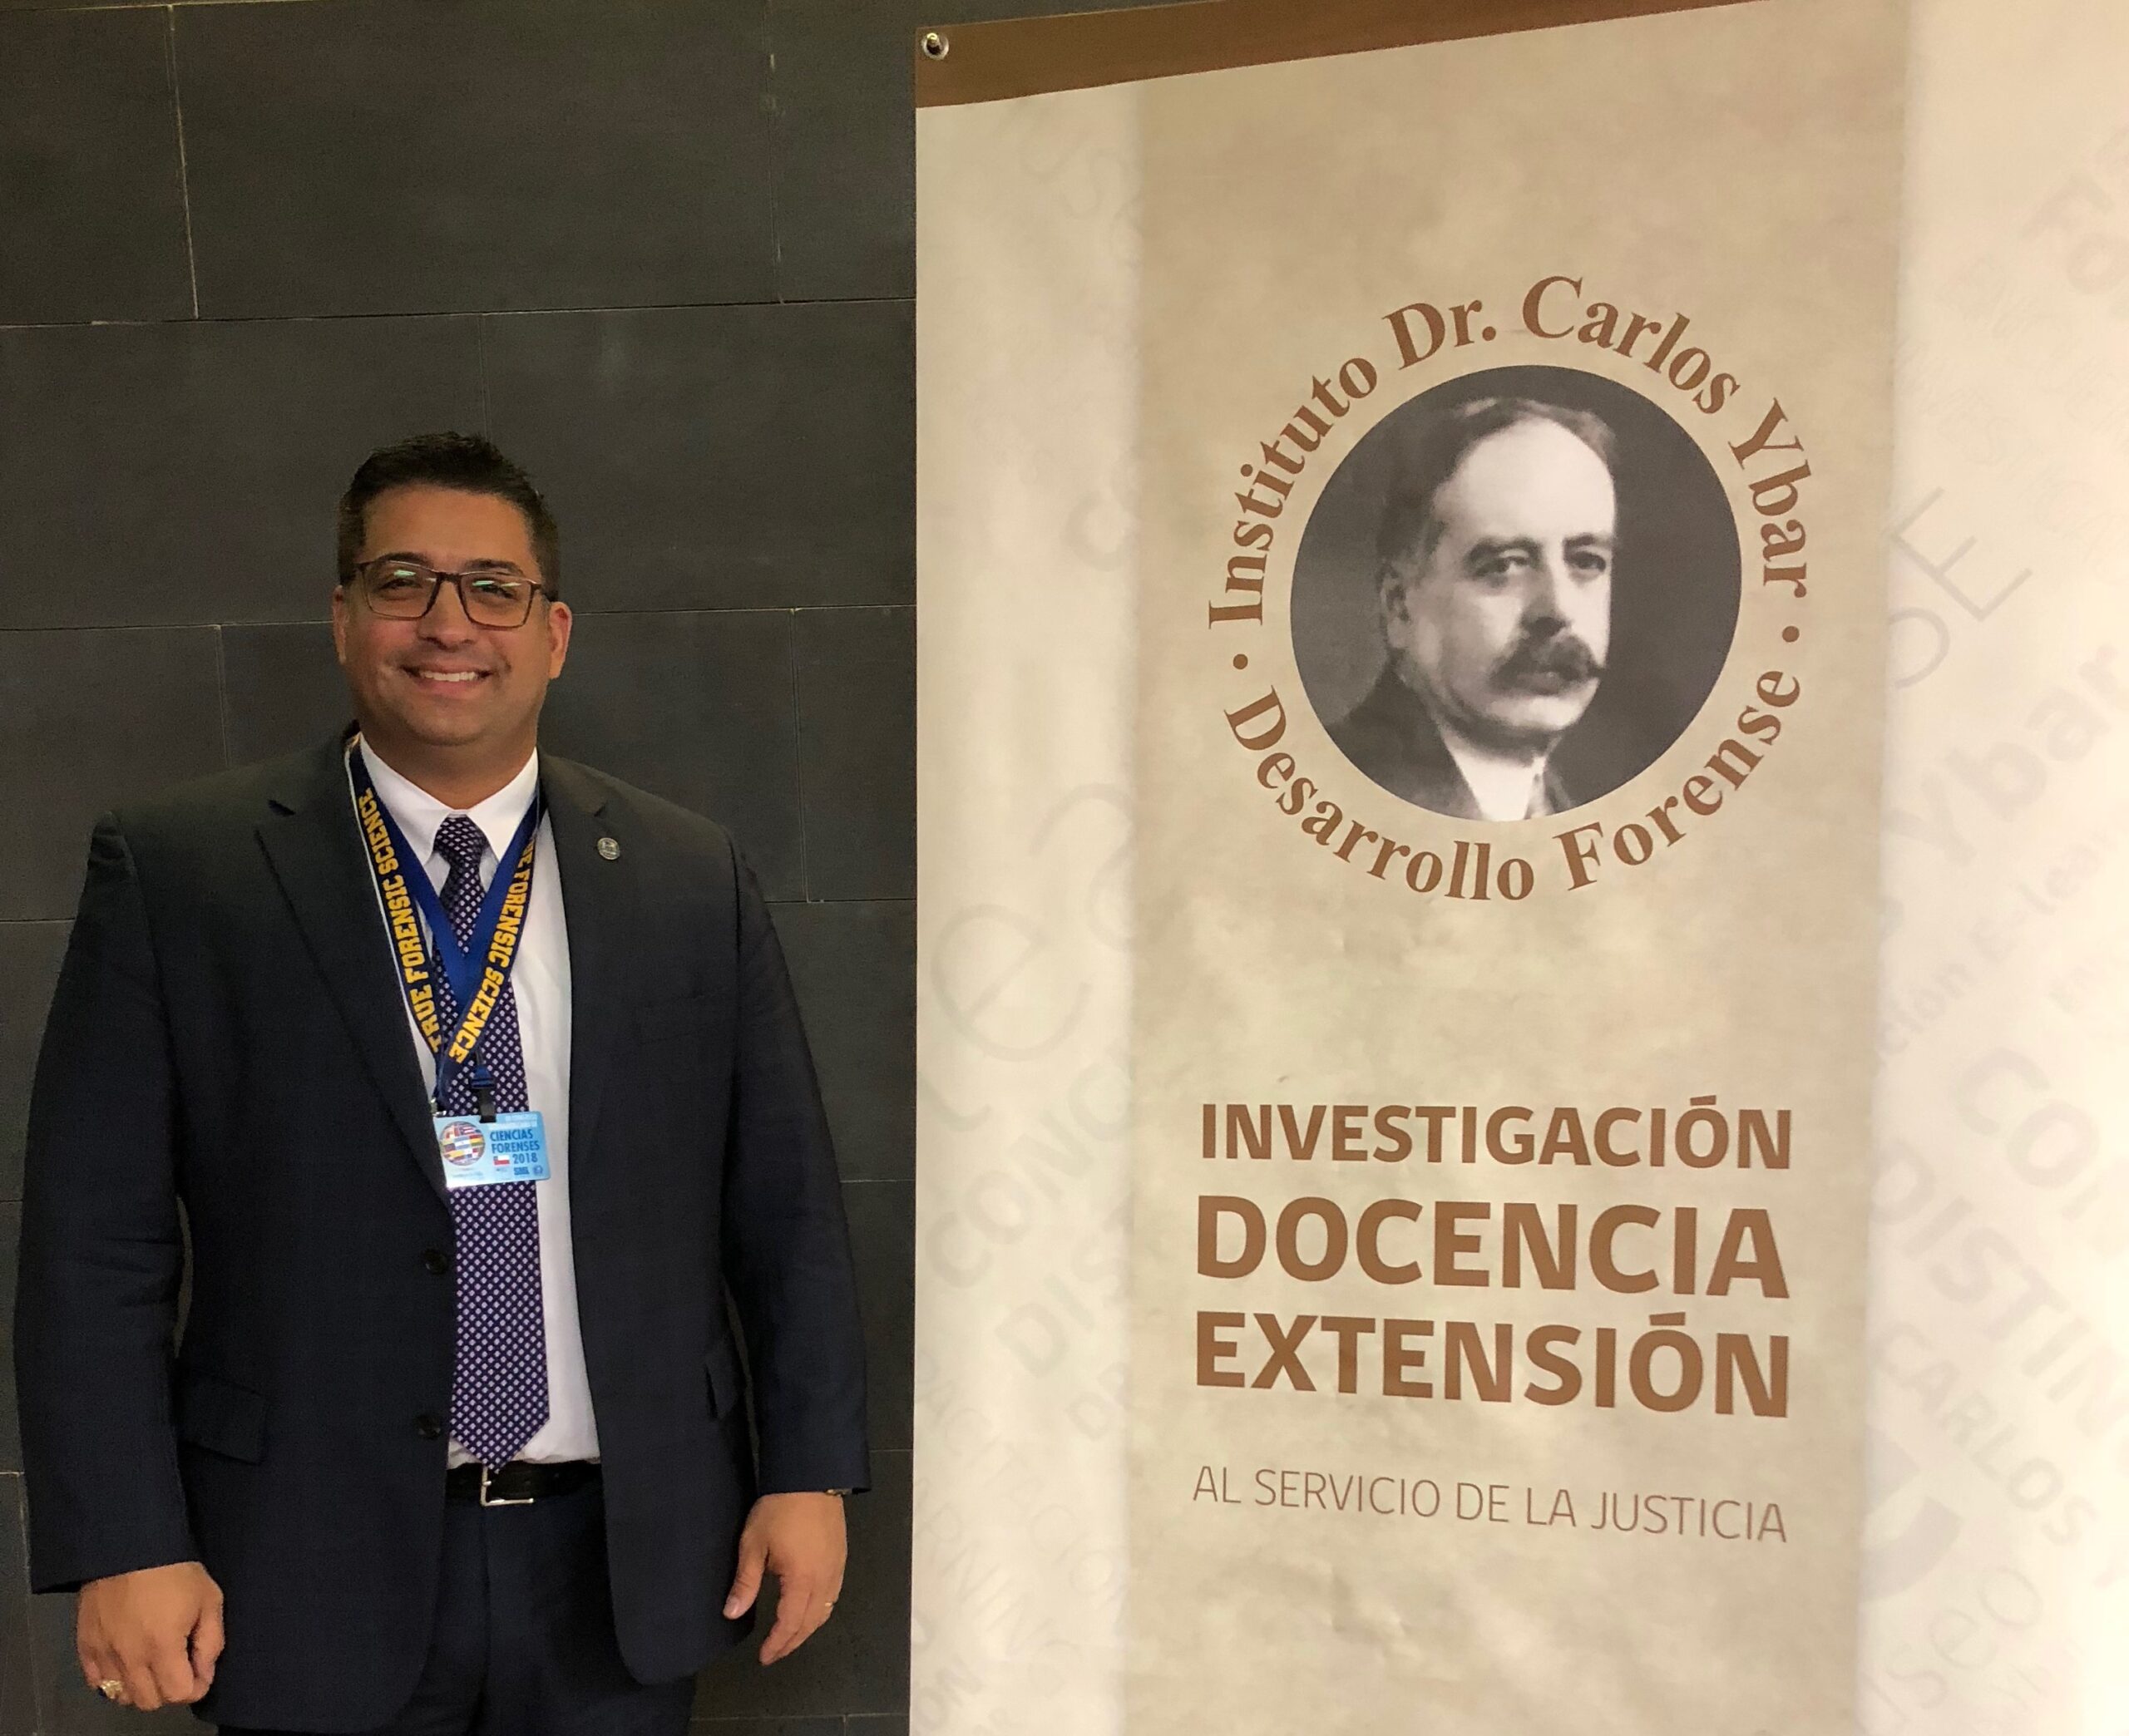 El Director Científico e Instructor de TFS, Prof. Carlos A. Gutierrez, fue Premiado con la 1ª Mención Honorífica del VIII Concurso Iberoamericano de Investigación Forense Dr. Carlos Ybar